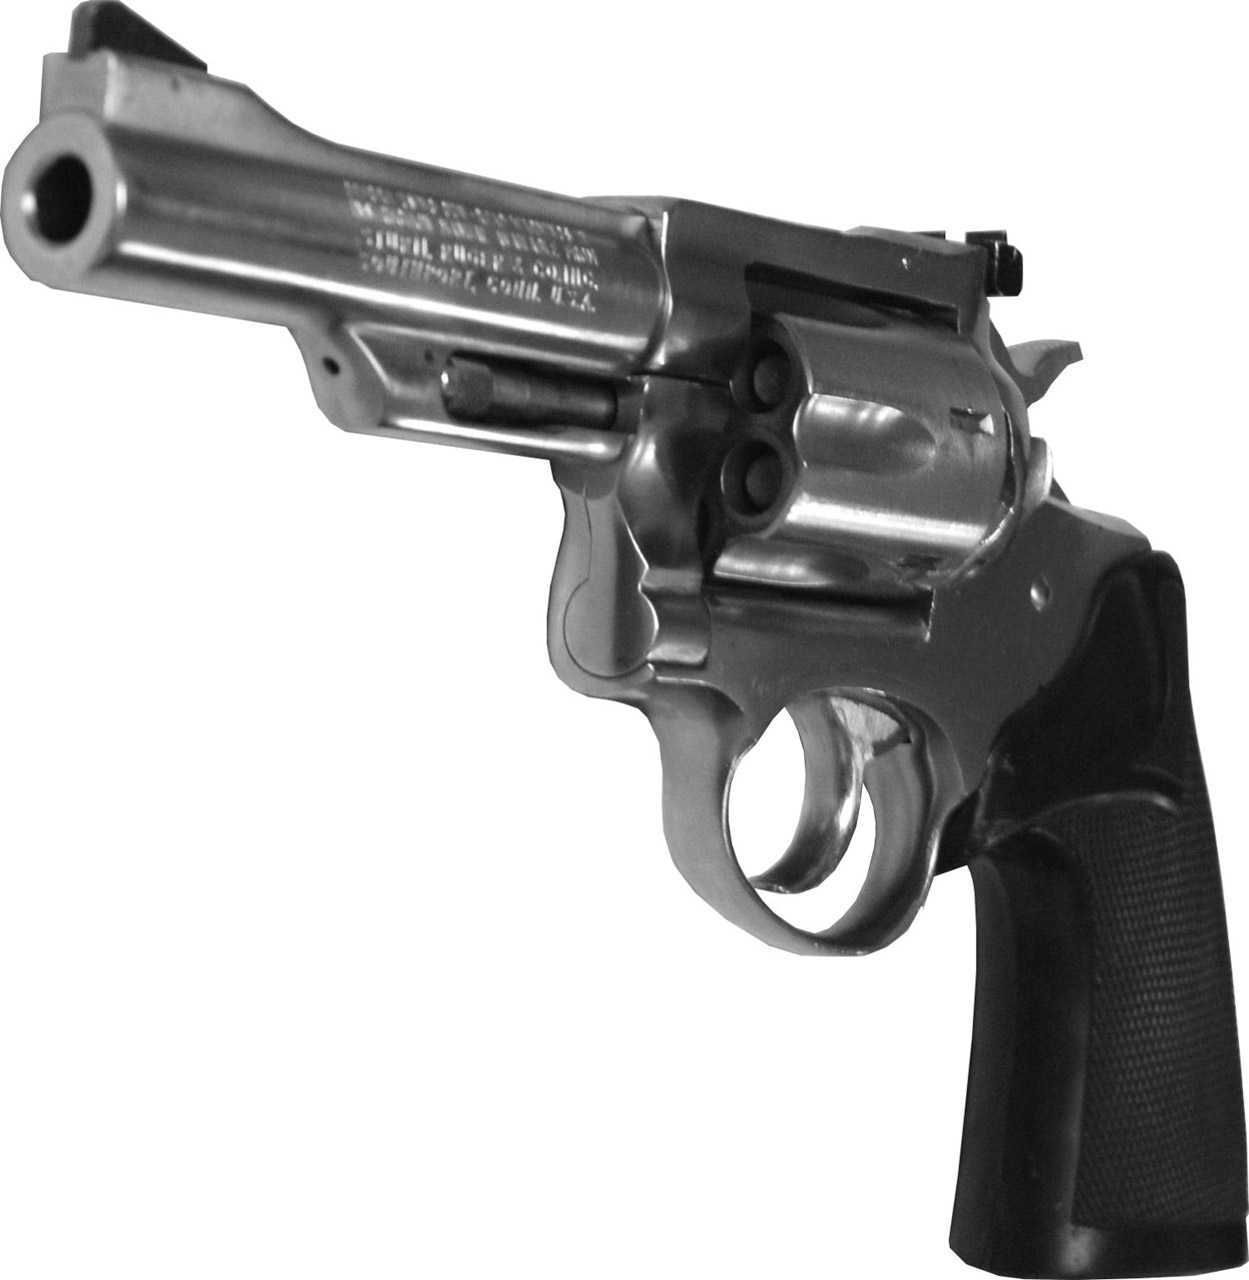 Imagen de un Magnum 357 (no pertenece a las armas subastadas).